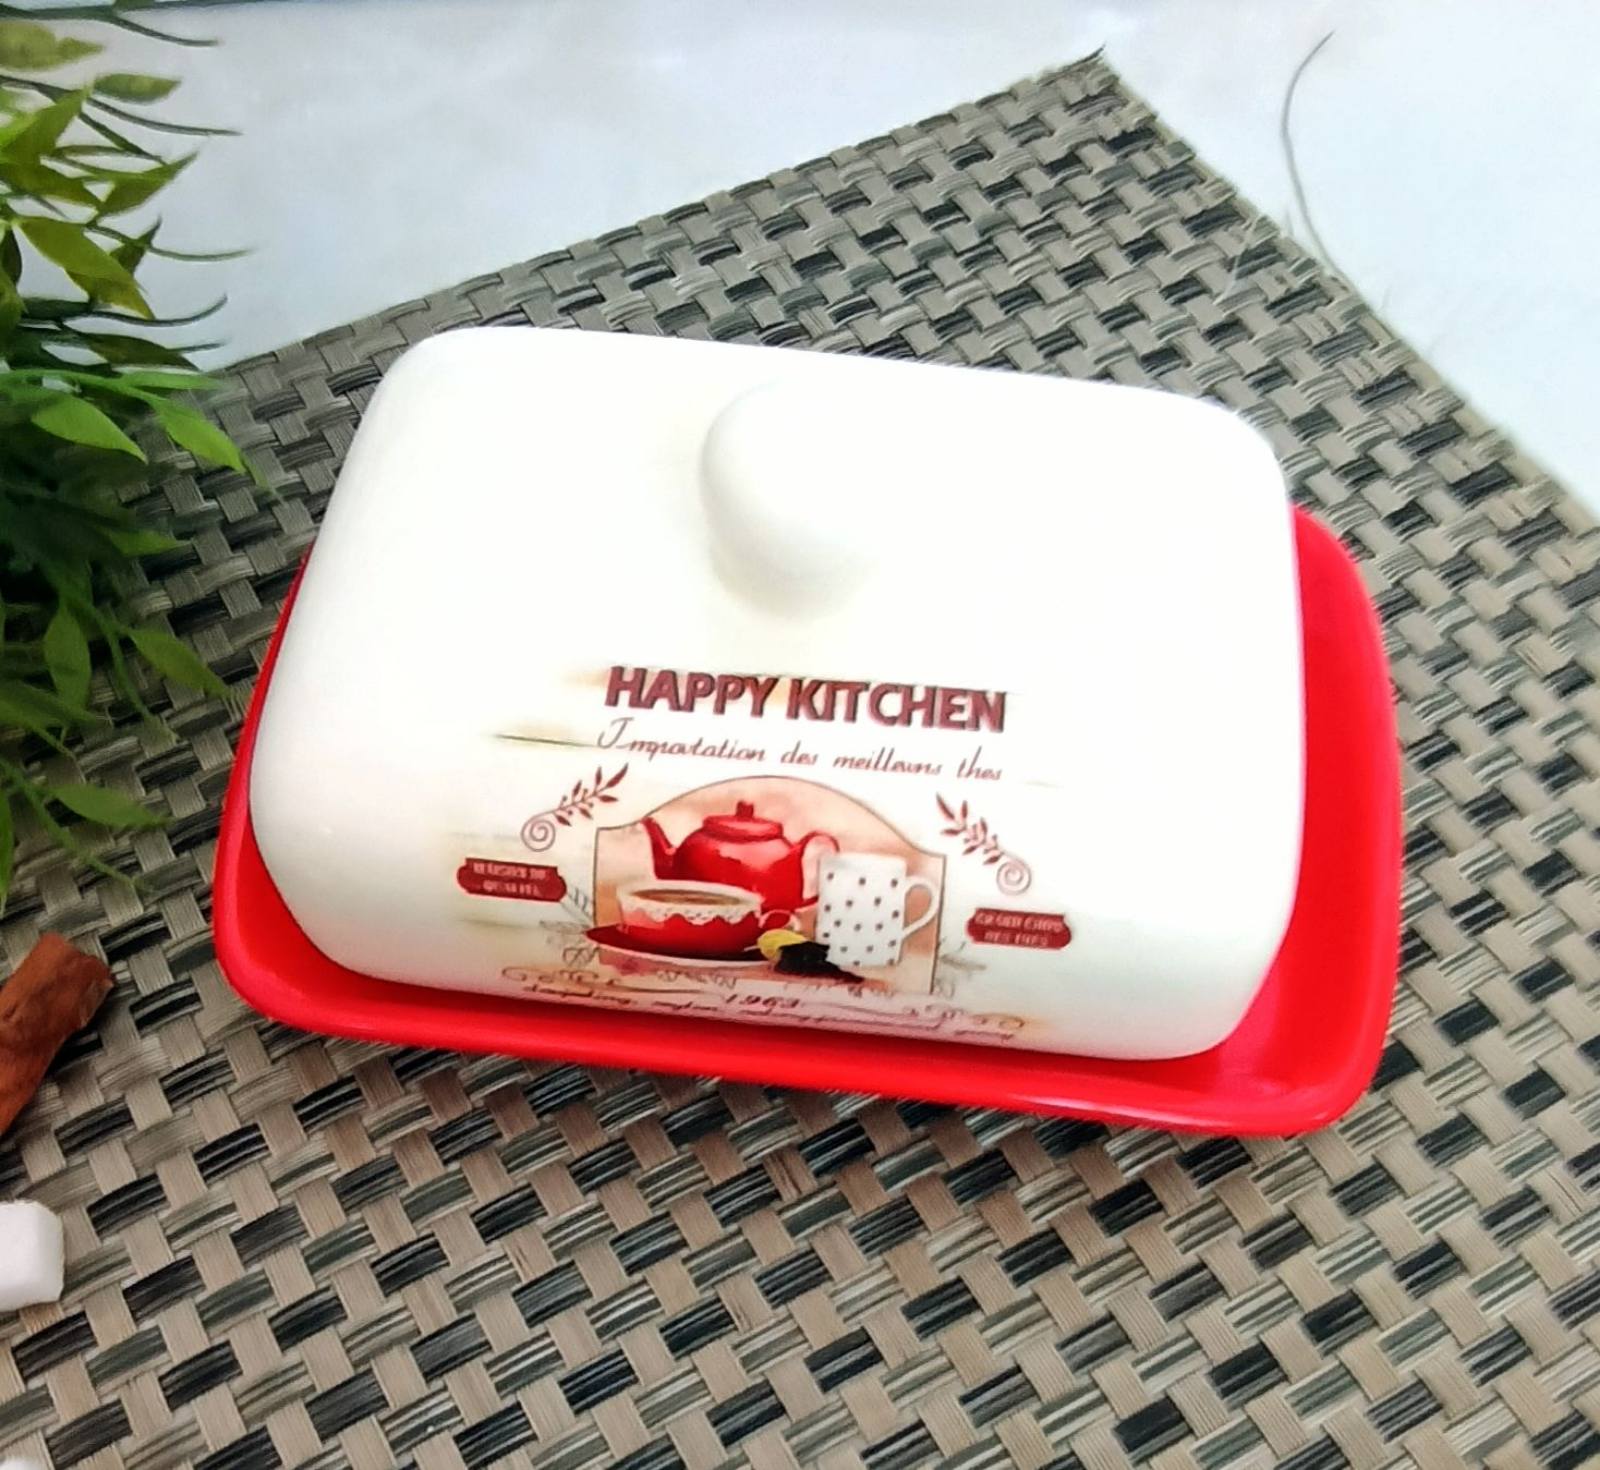 Масленка керамическая Happy Kitchen - 3397-11 ✅ базовая цена 166.32 грн. ✔ Опт ✔ Скидки ✔ Заходите! - Интернет-магазин ✅ Фортуна-опт ✅